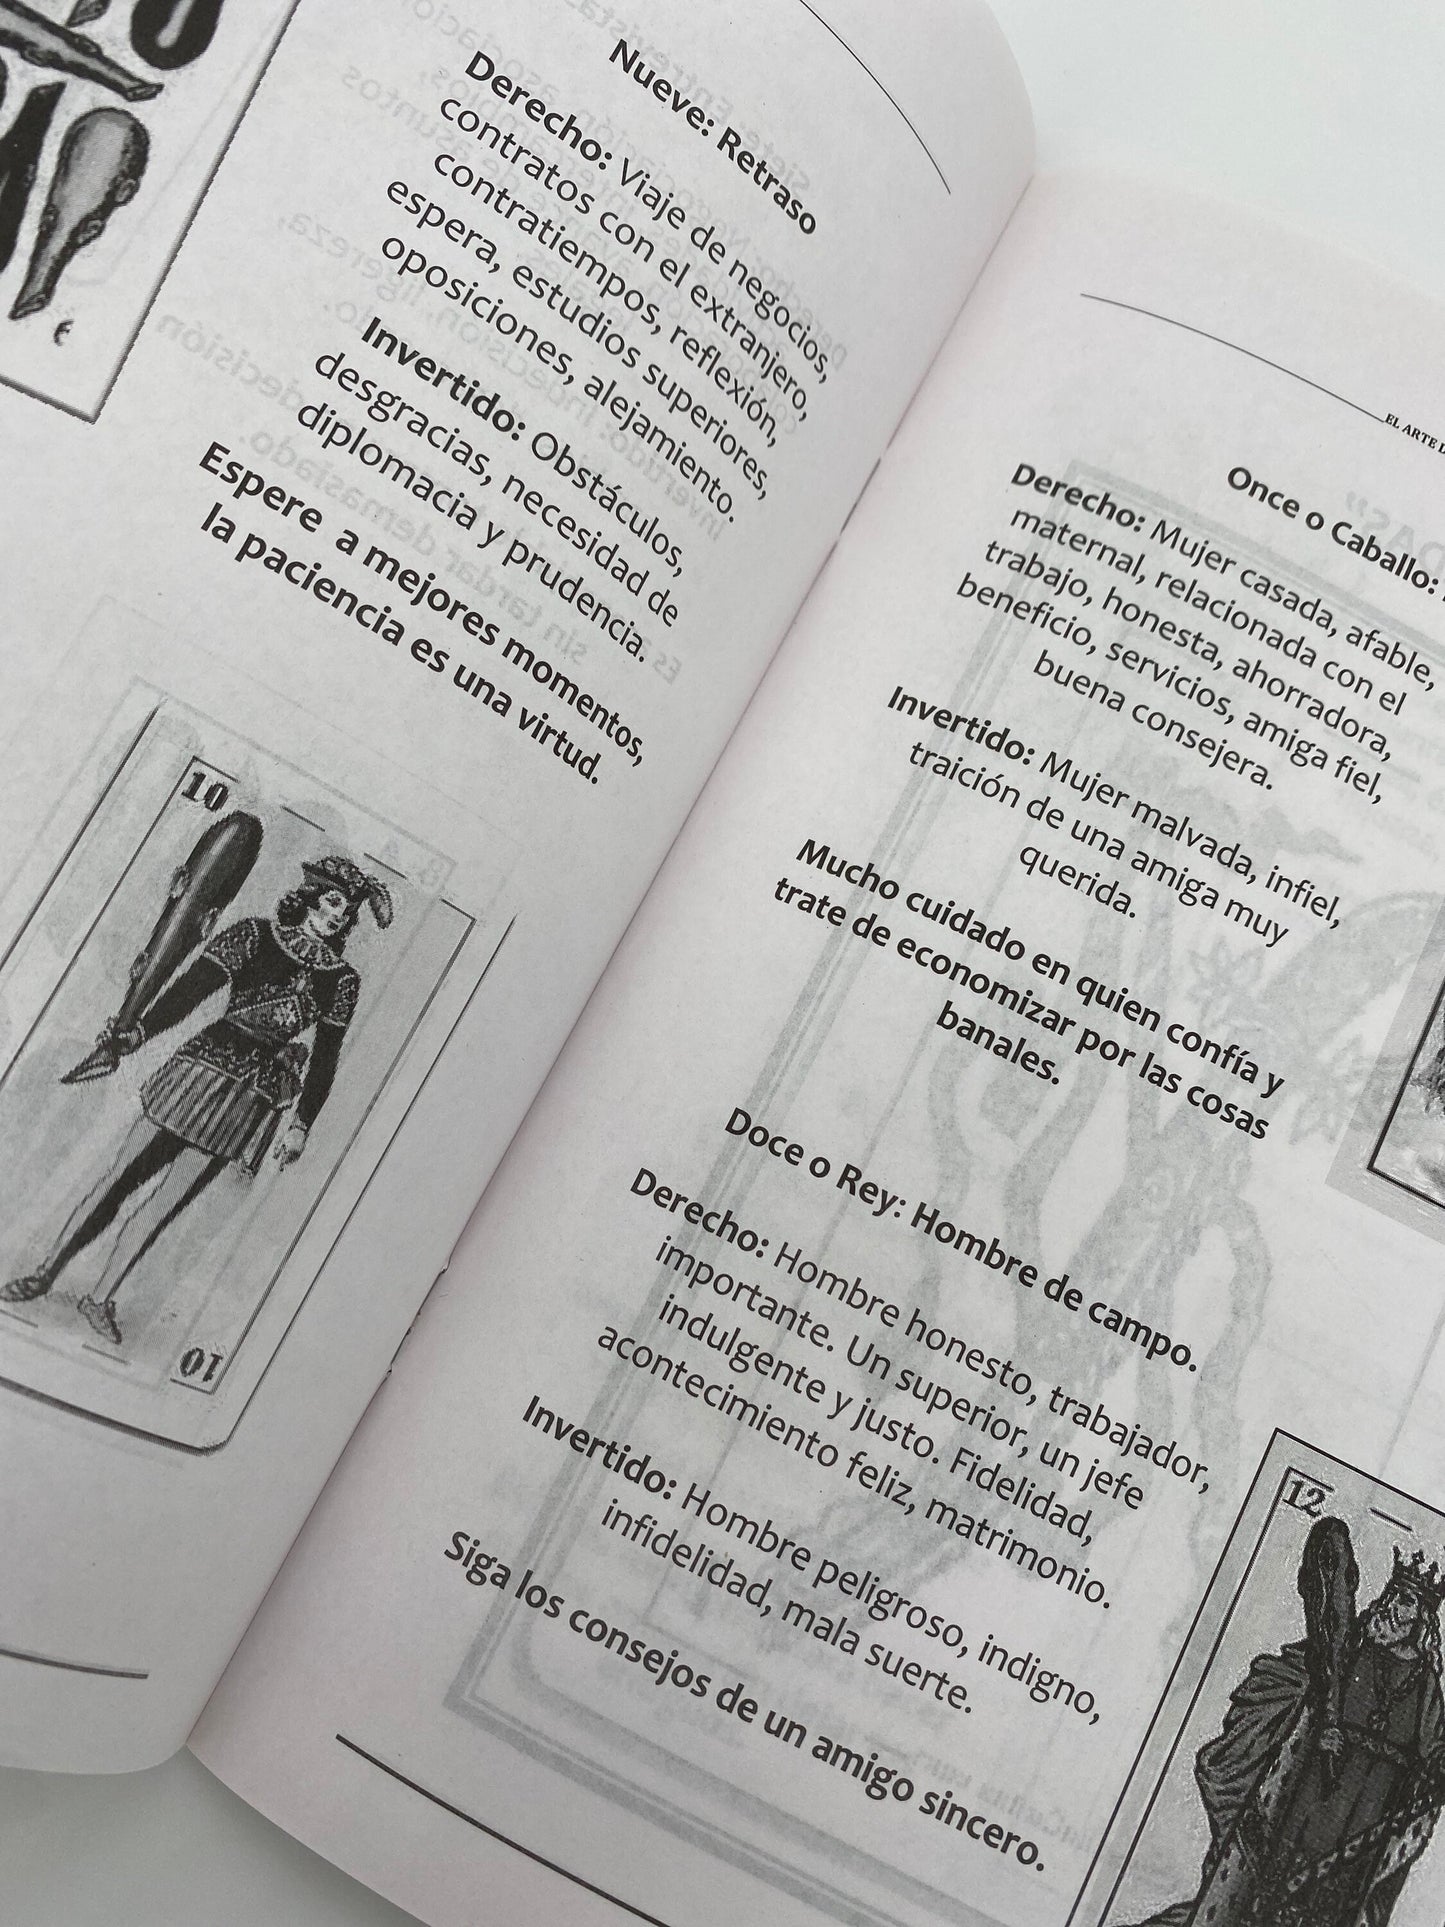 El Arte de Enterpretar Las Cartas! Learn How to Read Baraja Espanola! *NEW BOOK* Includes Deck of Baraja Espanola!